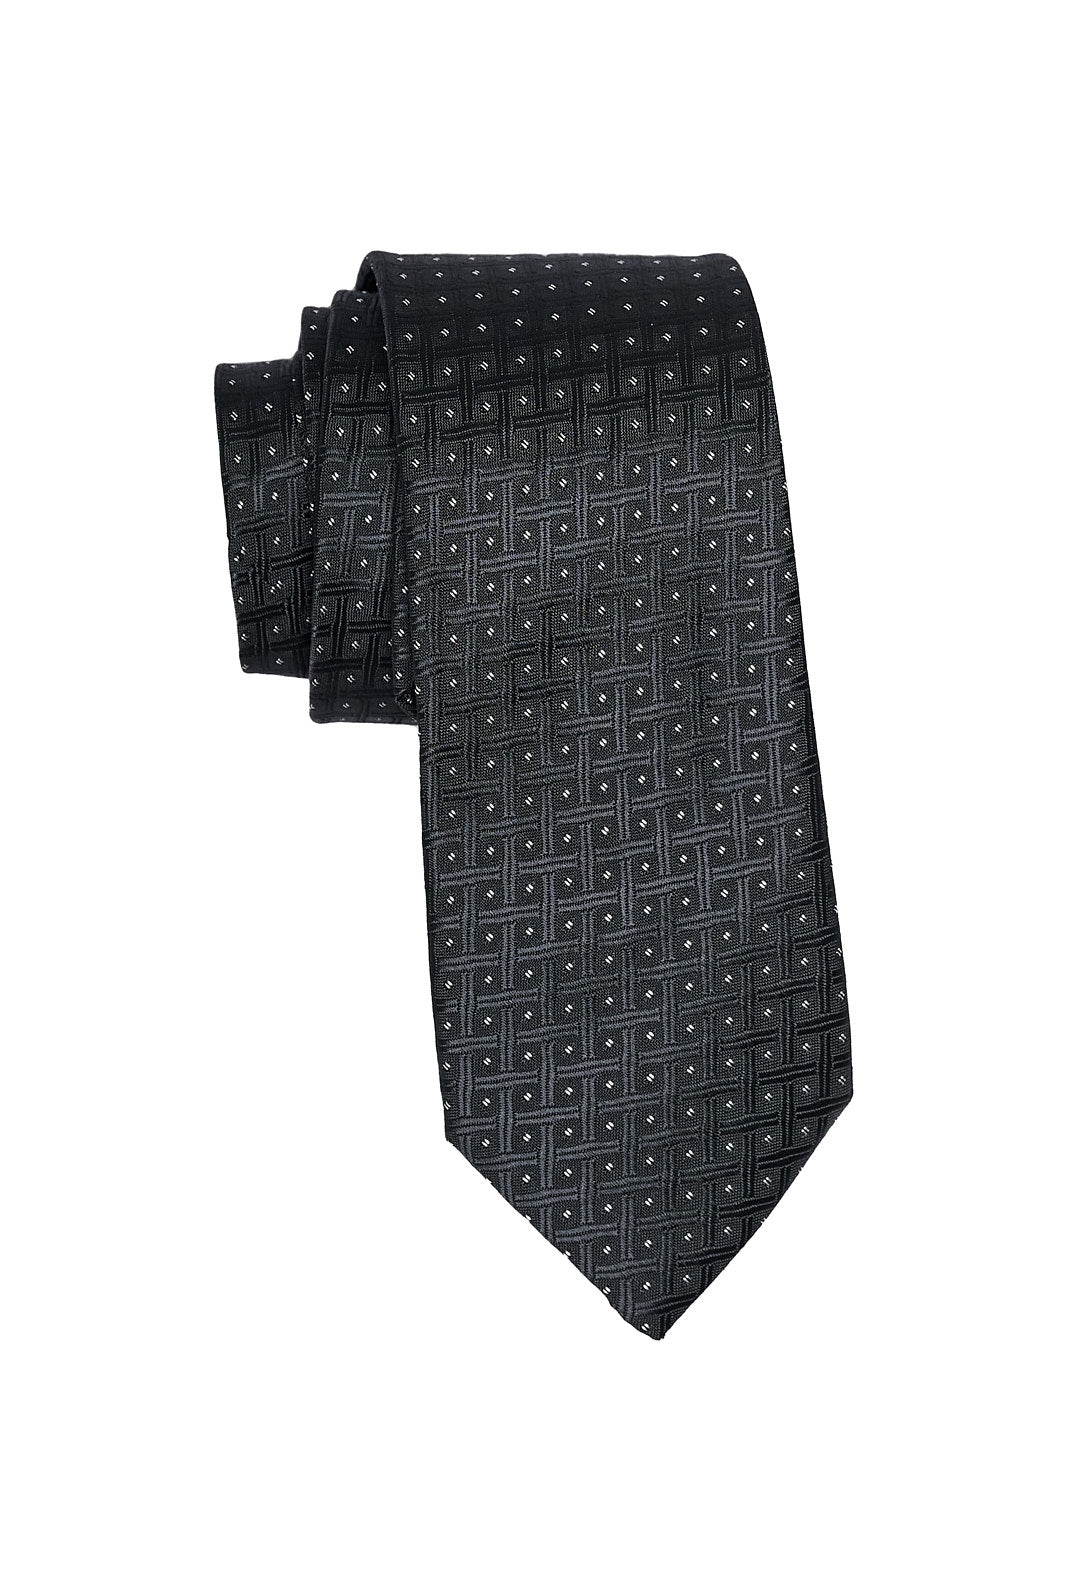 Black & Gray Check Tie